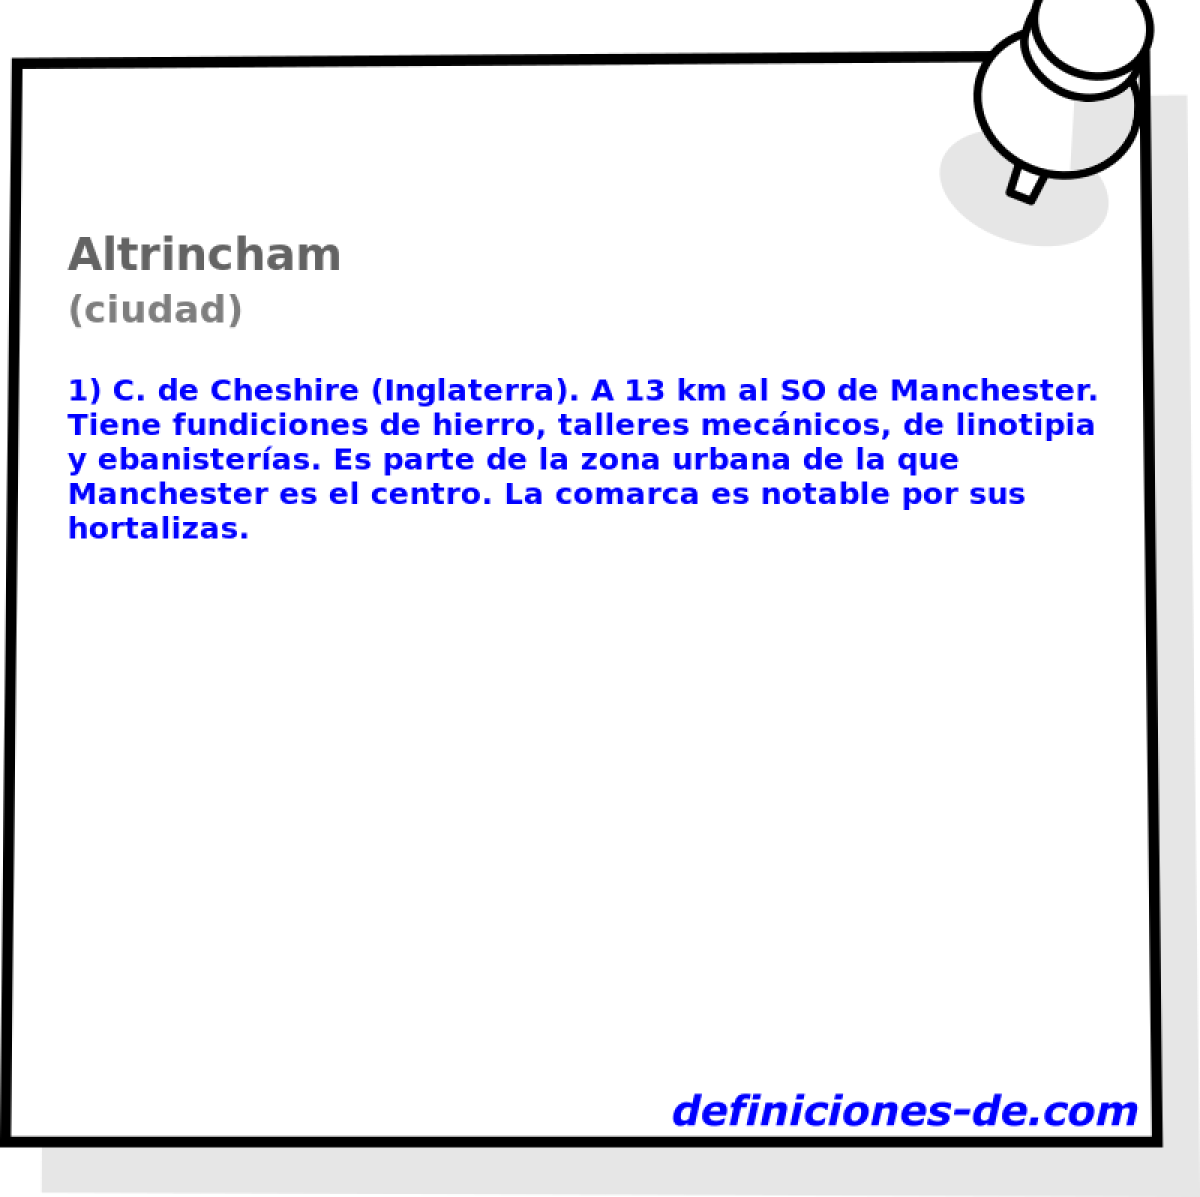 Altrincham (ciudad)